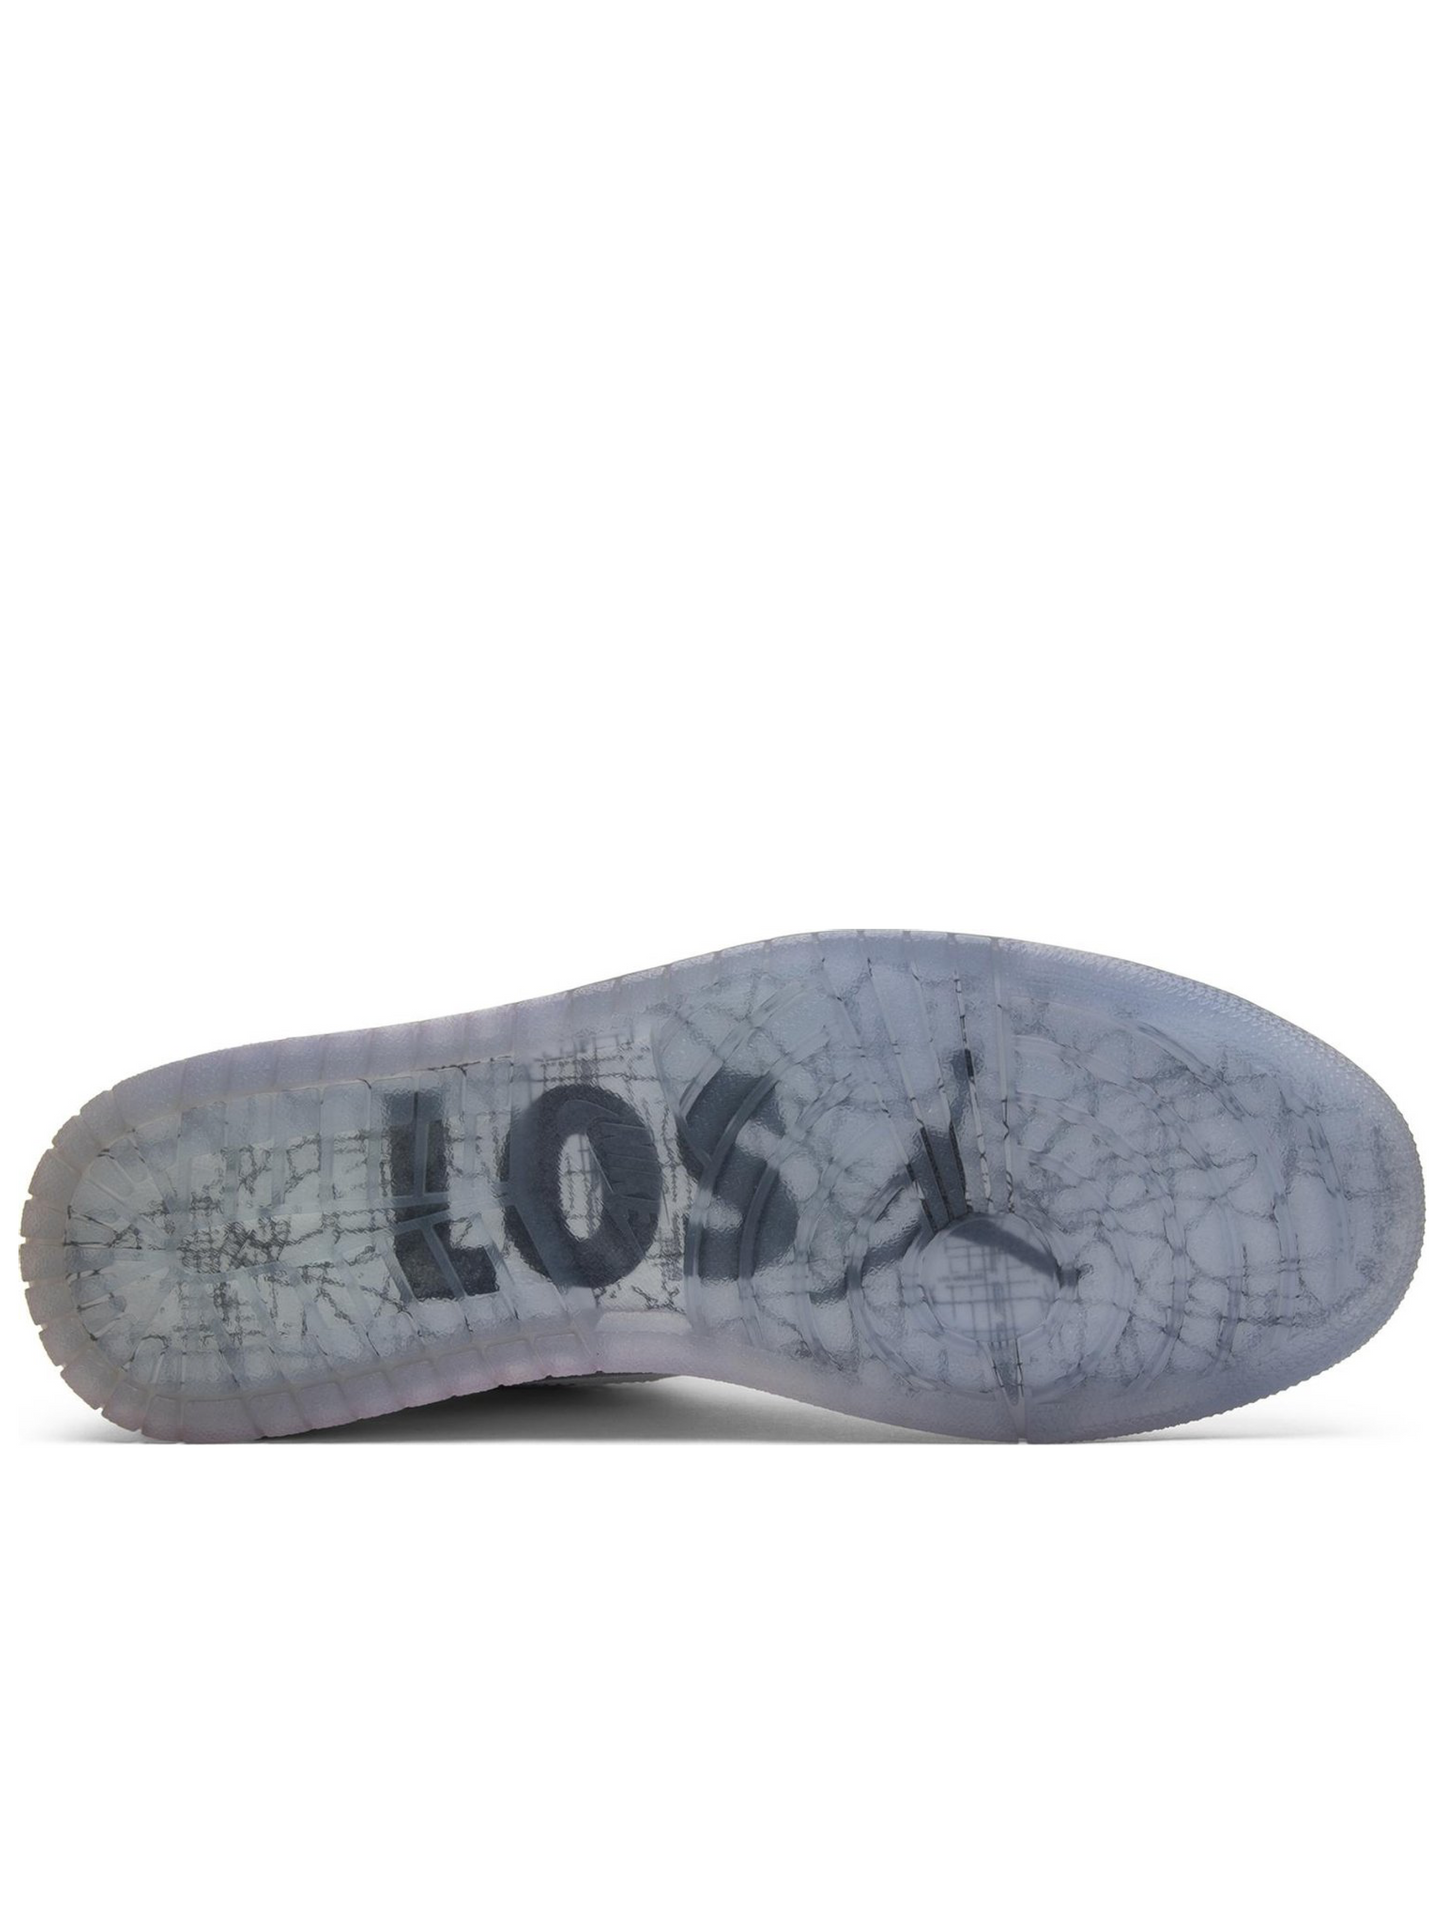 Air Jordan 1 Retro High OG 'Los Angeles' 2015 819012-300